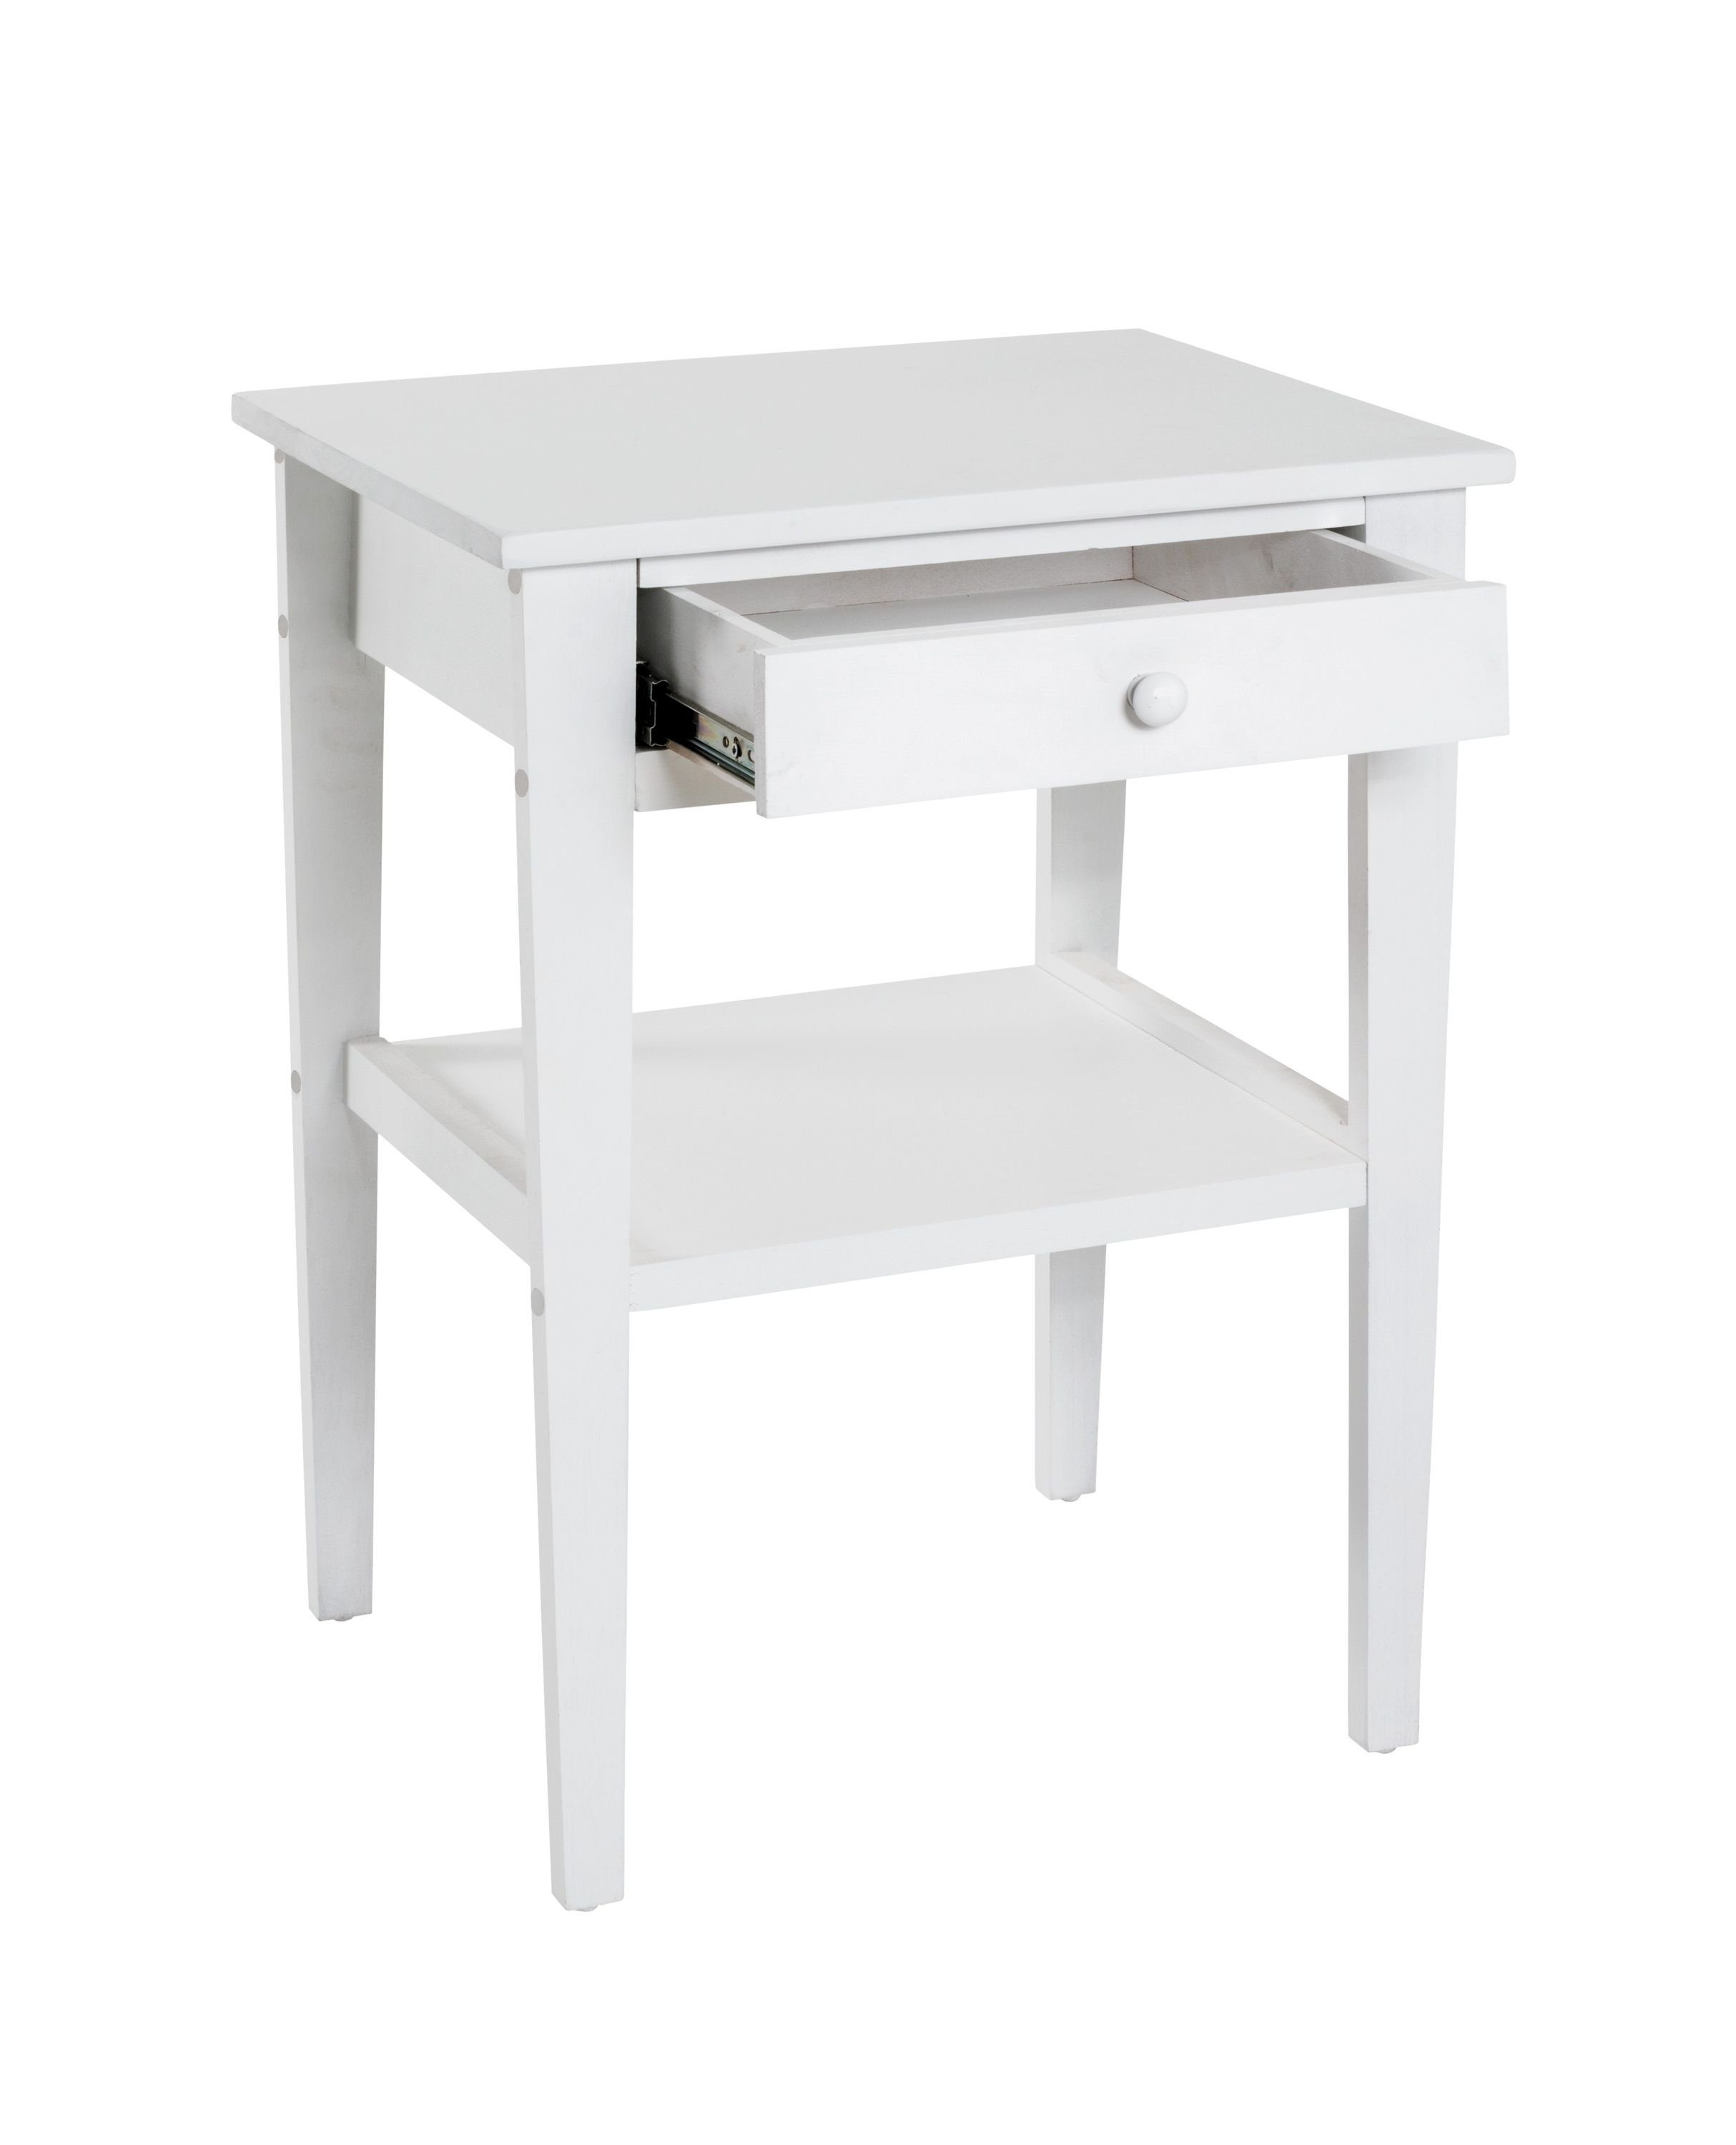 HAKU Beistelltisch Beistelltisch, HAKU Möbel weiß Beistelltisch 46x60x35 cm BHT 46x60x35 (BHT cm)